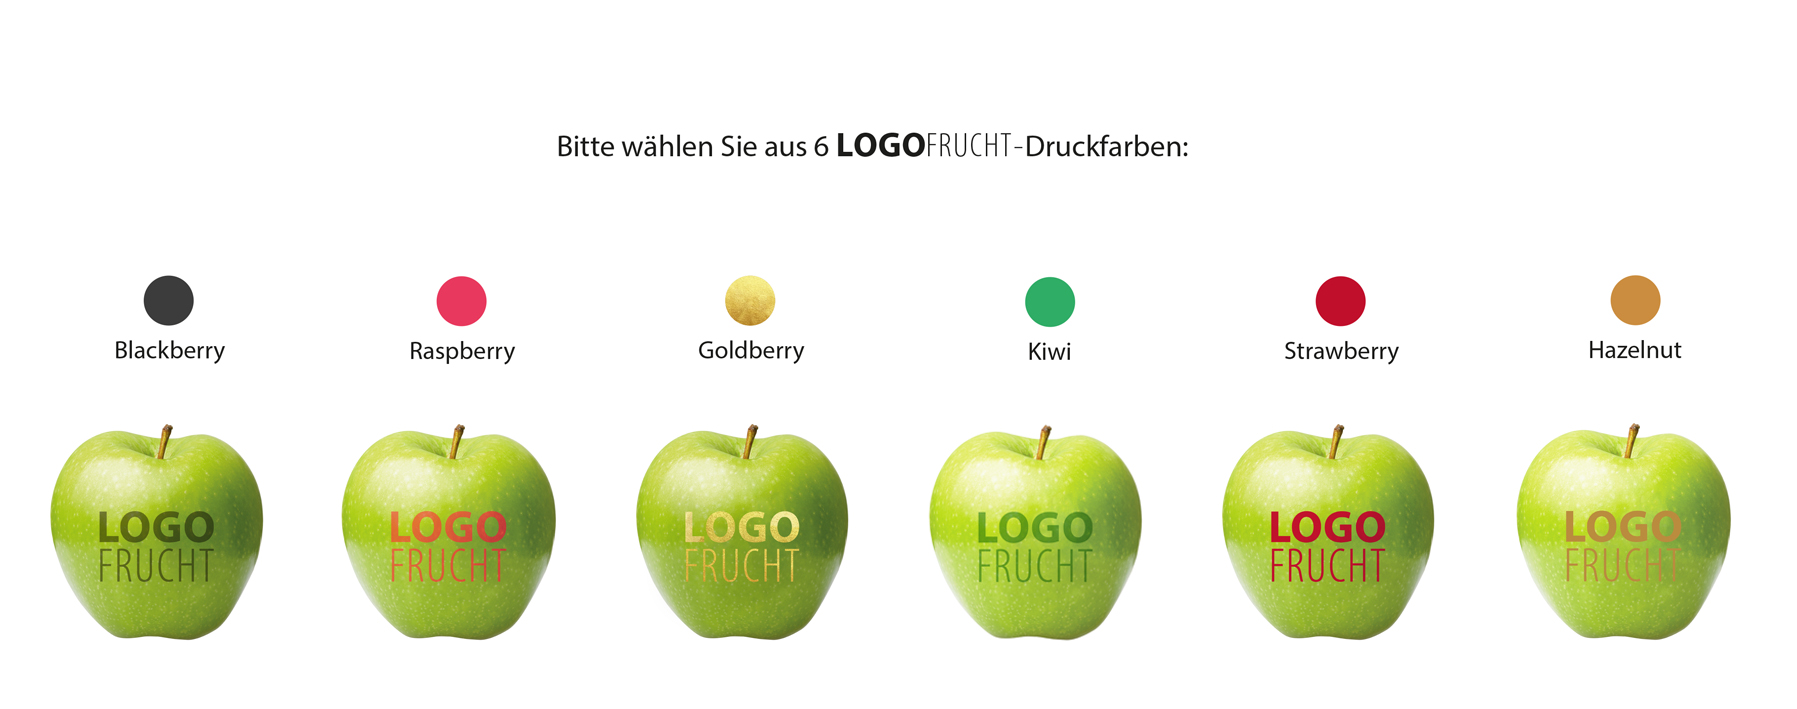 Grüne Äpfel mit Aufdruck Mein Logo in unterschiedlichen Farben.